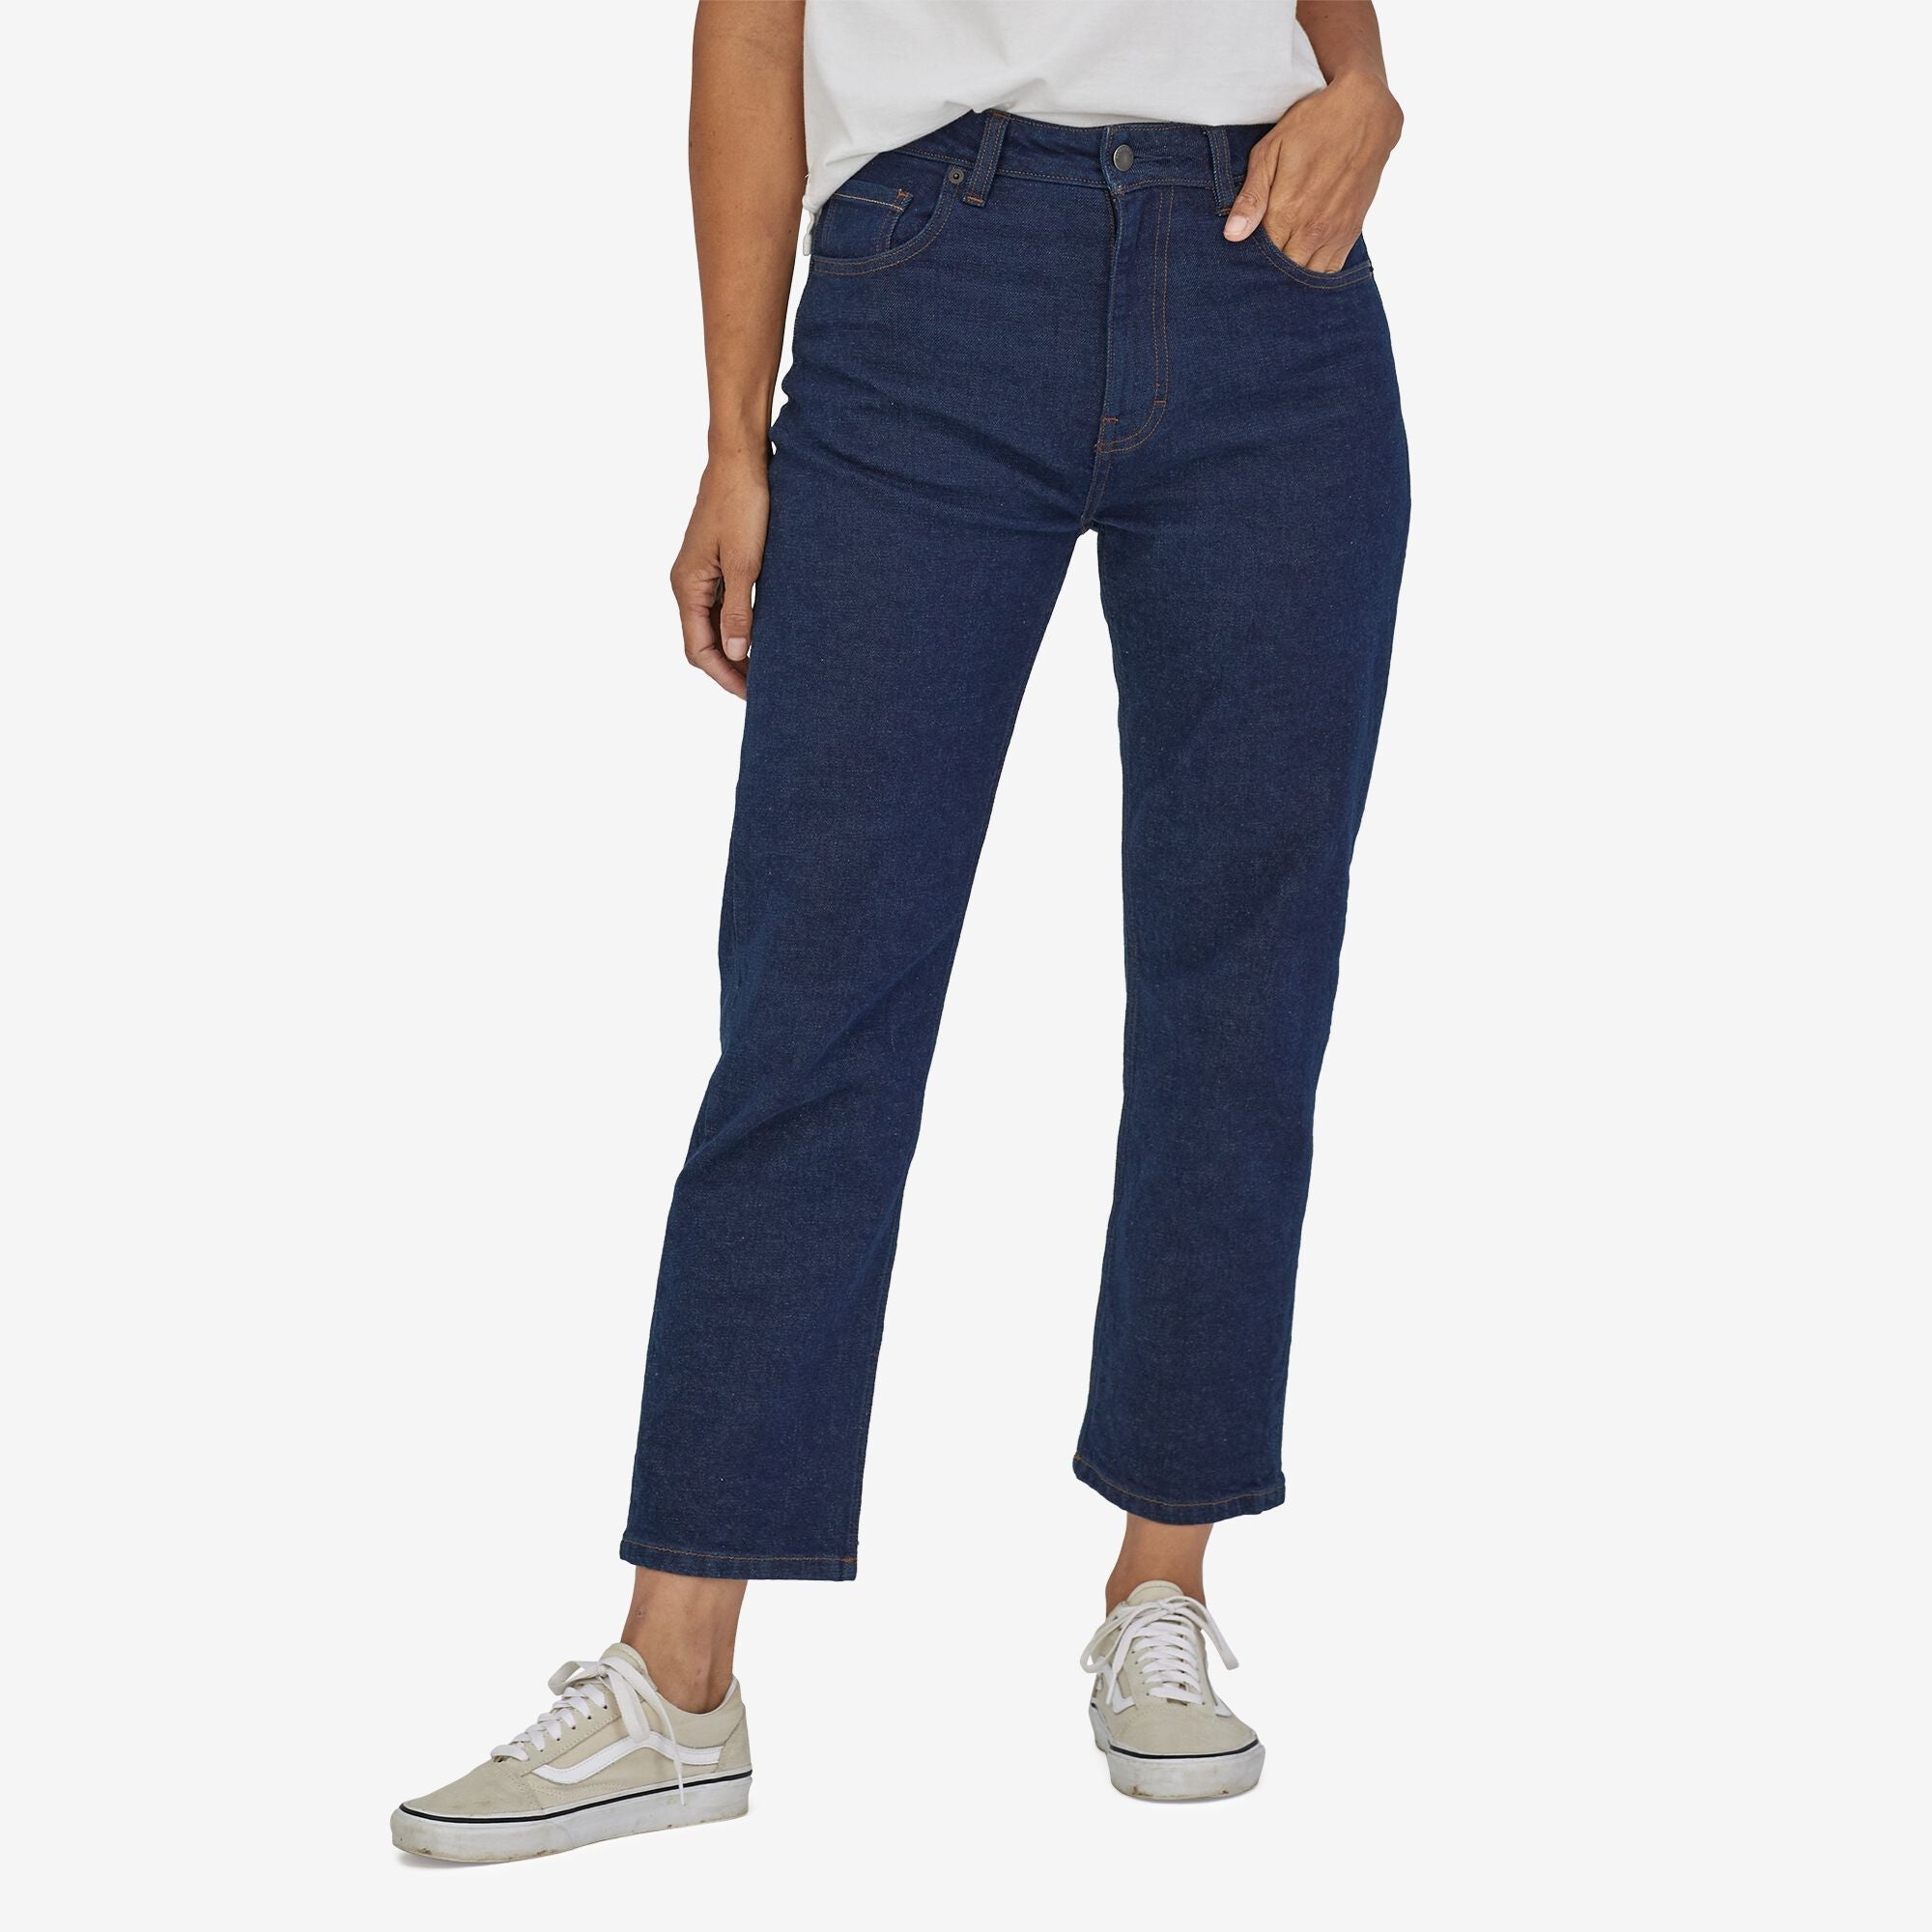 Seasonal & Casual Jeans for Women Australia - Women's Jeans - STMRLO